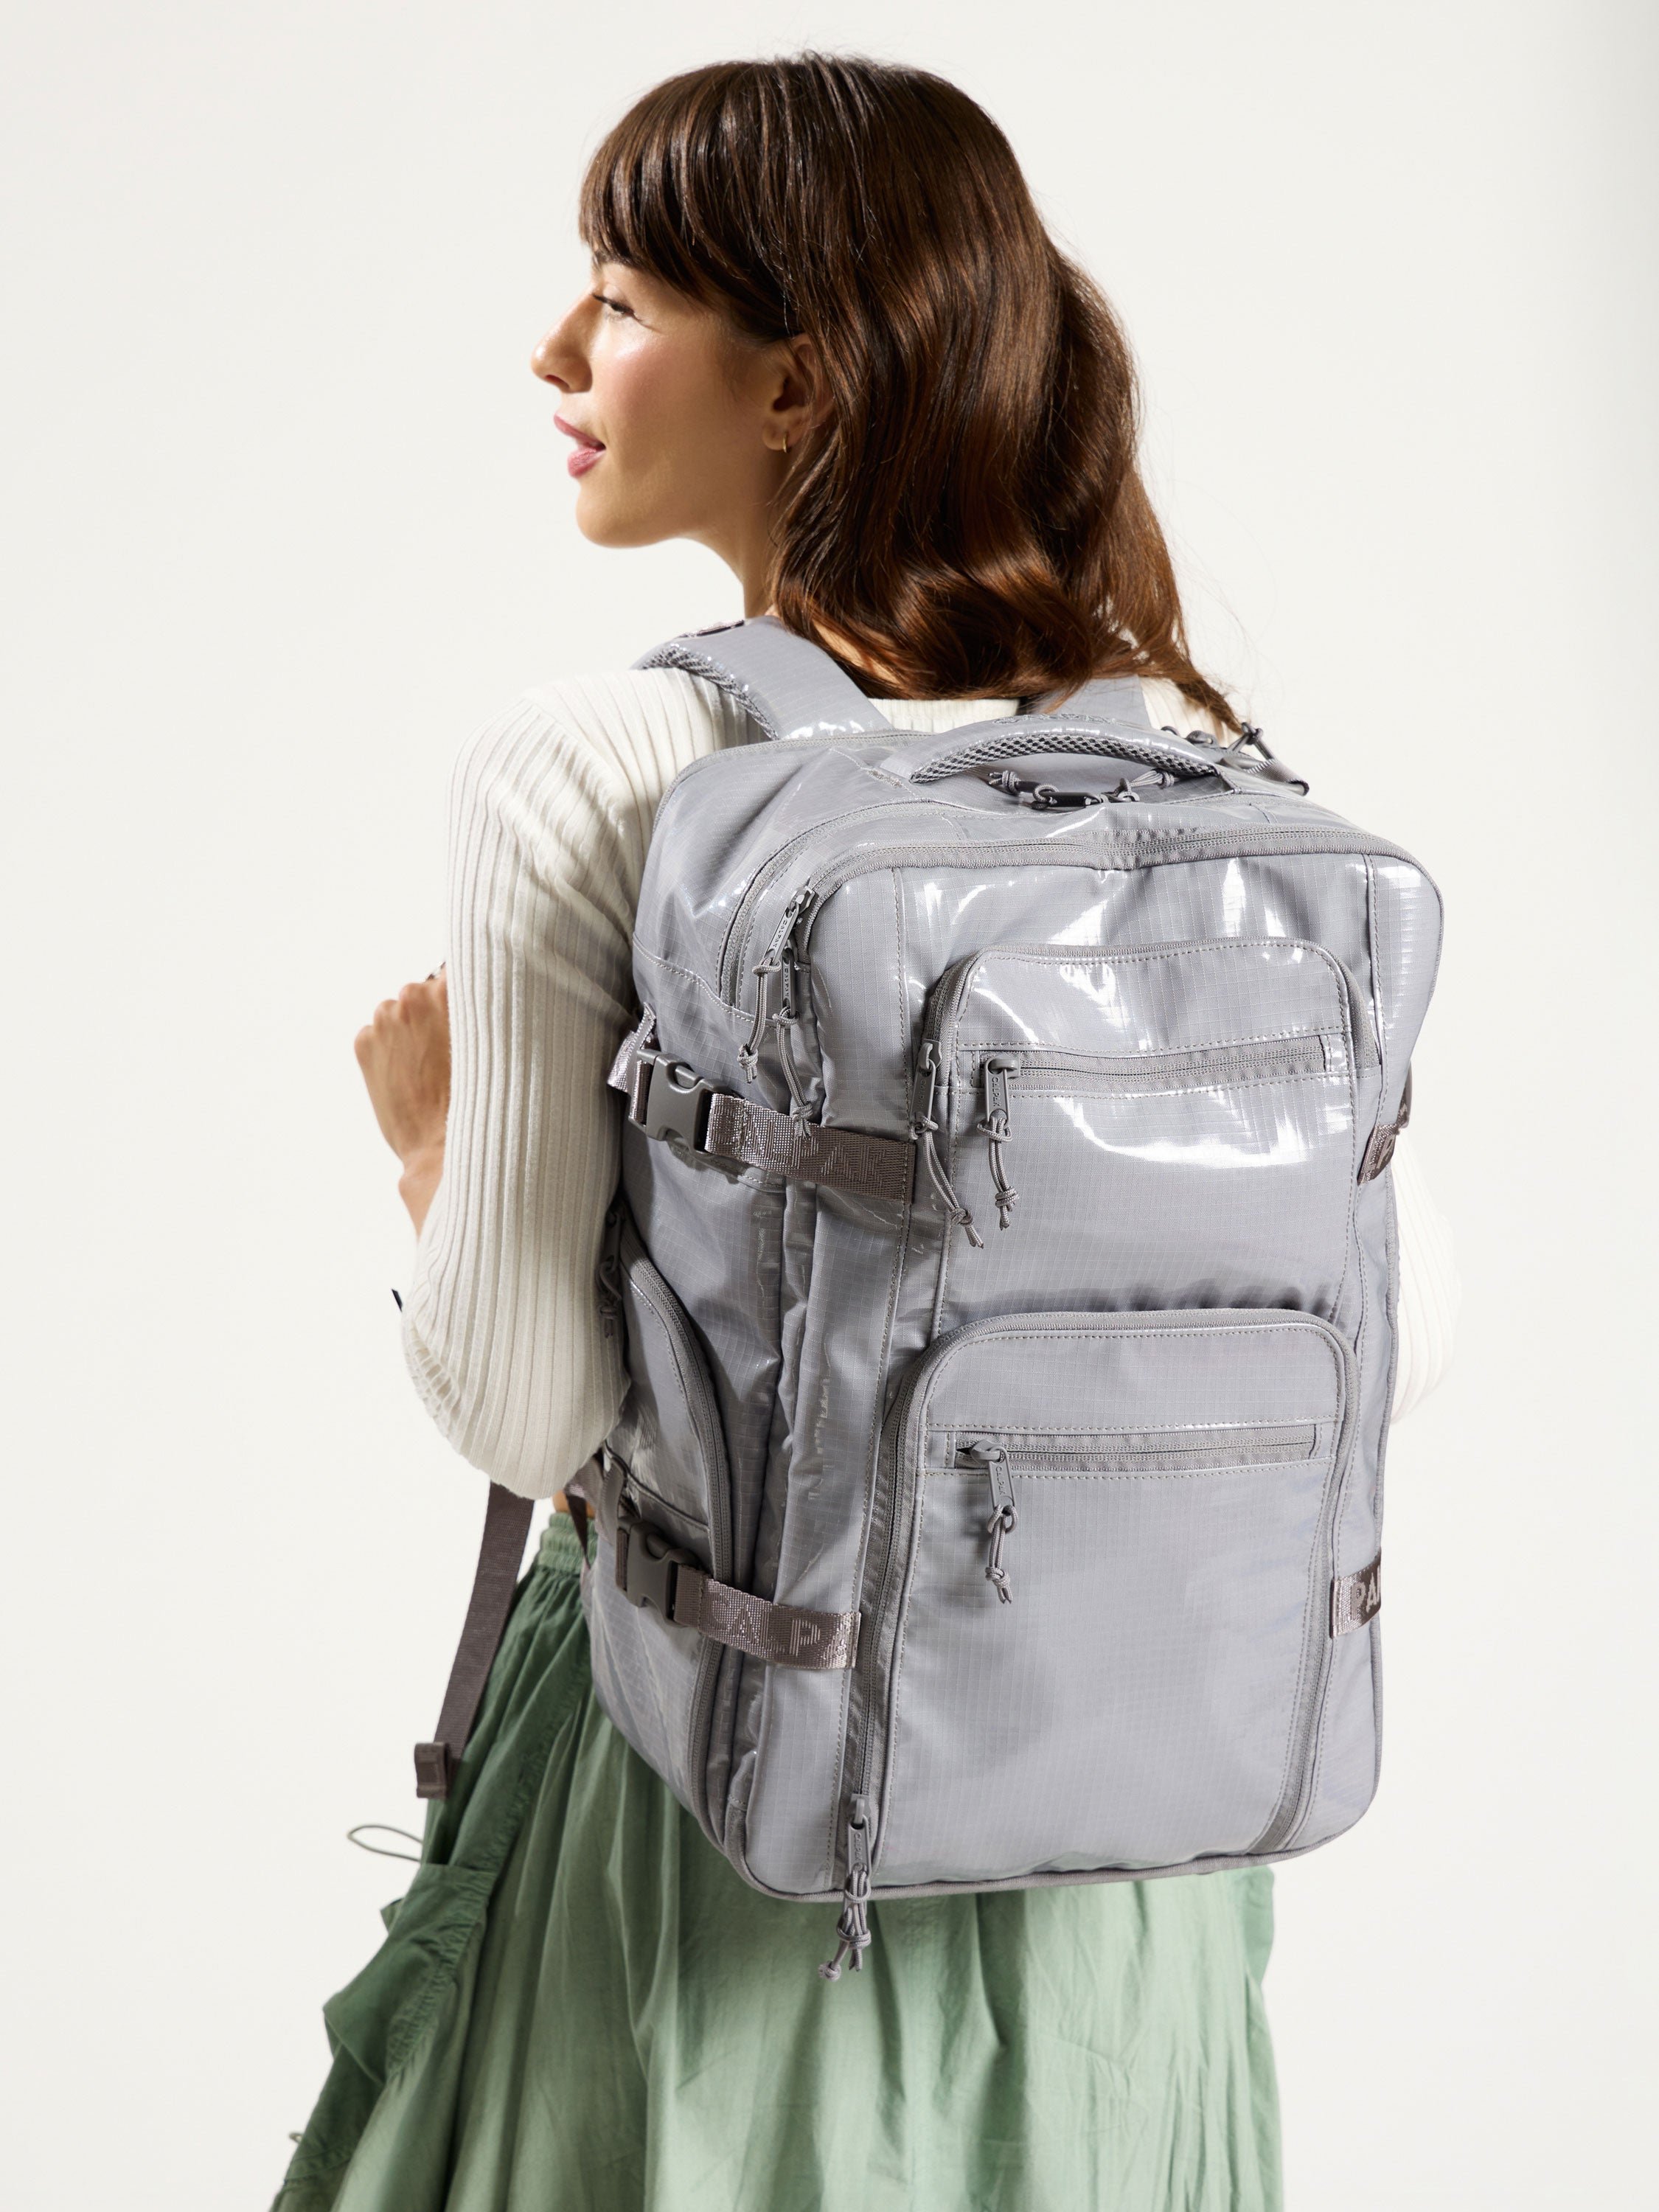 Model wearing durable CALPAK 26L Laptop Backpack Duffel in gray